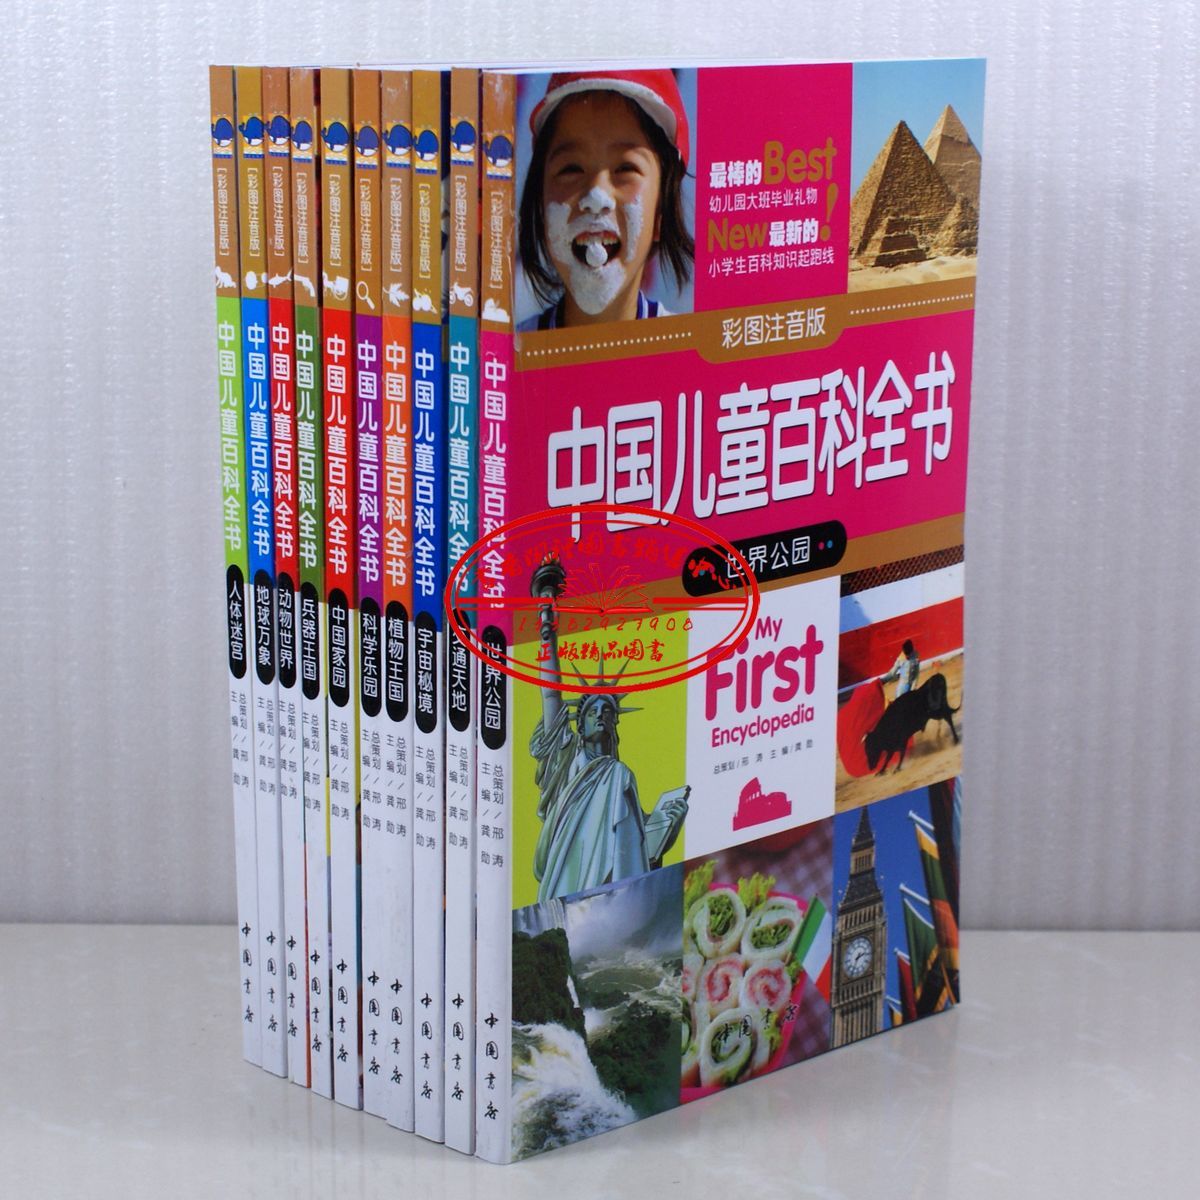 全新正版 少儿百科《中国儿童百科全书》彩图注音版 全10册套装